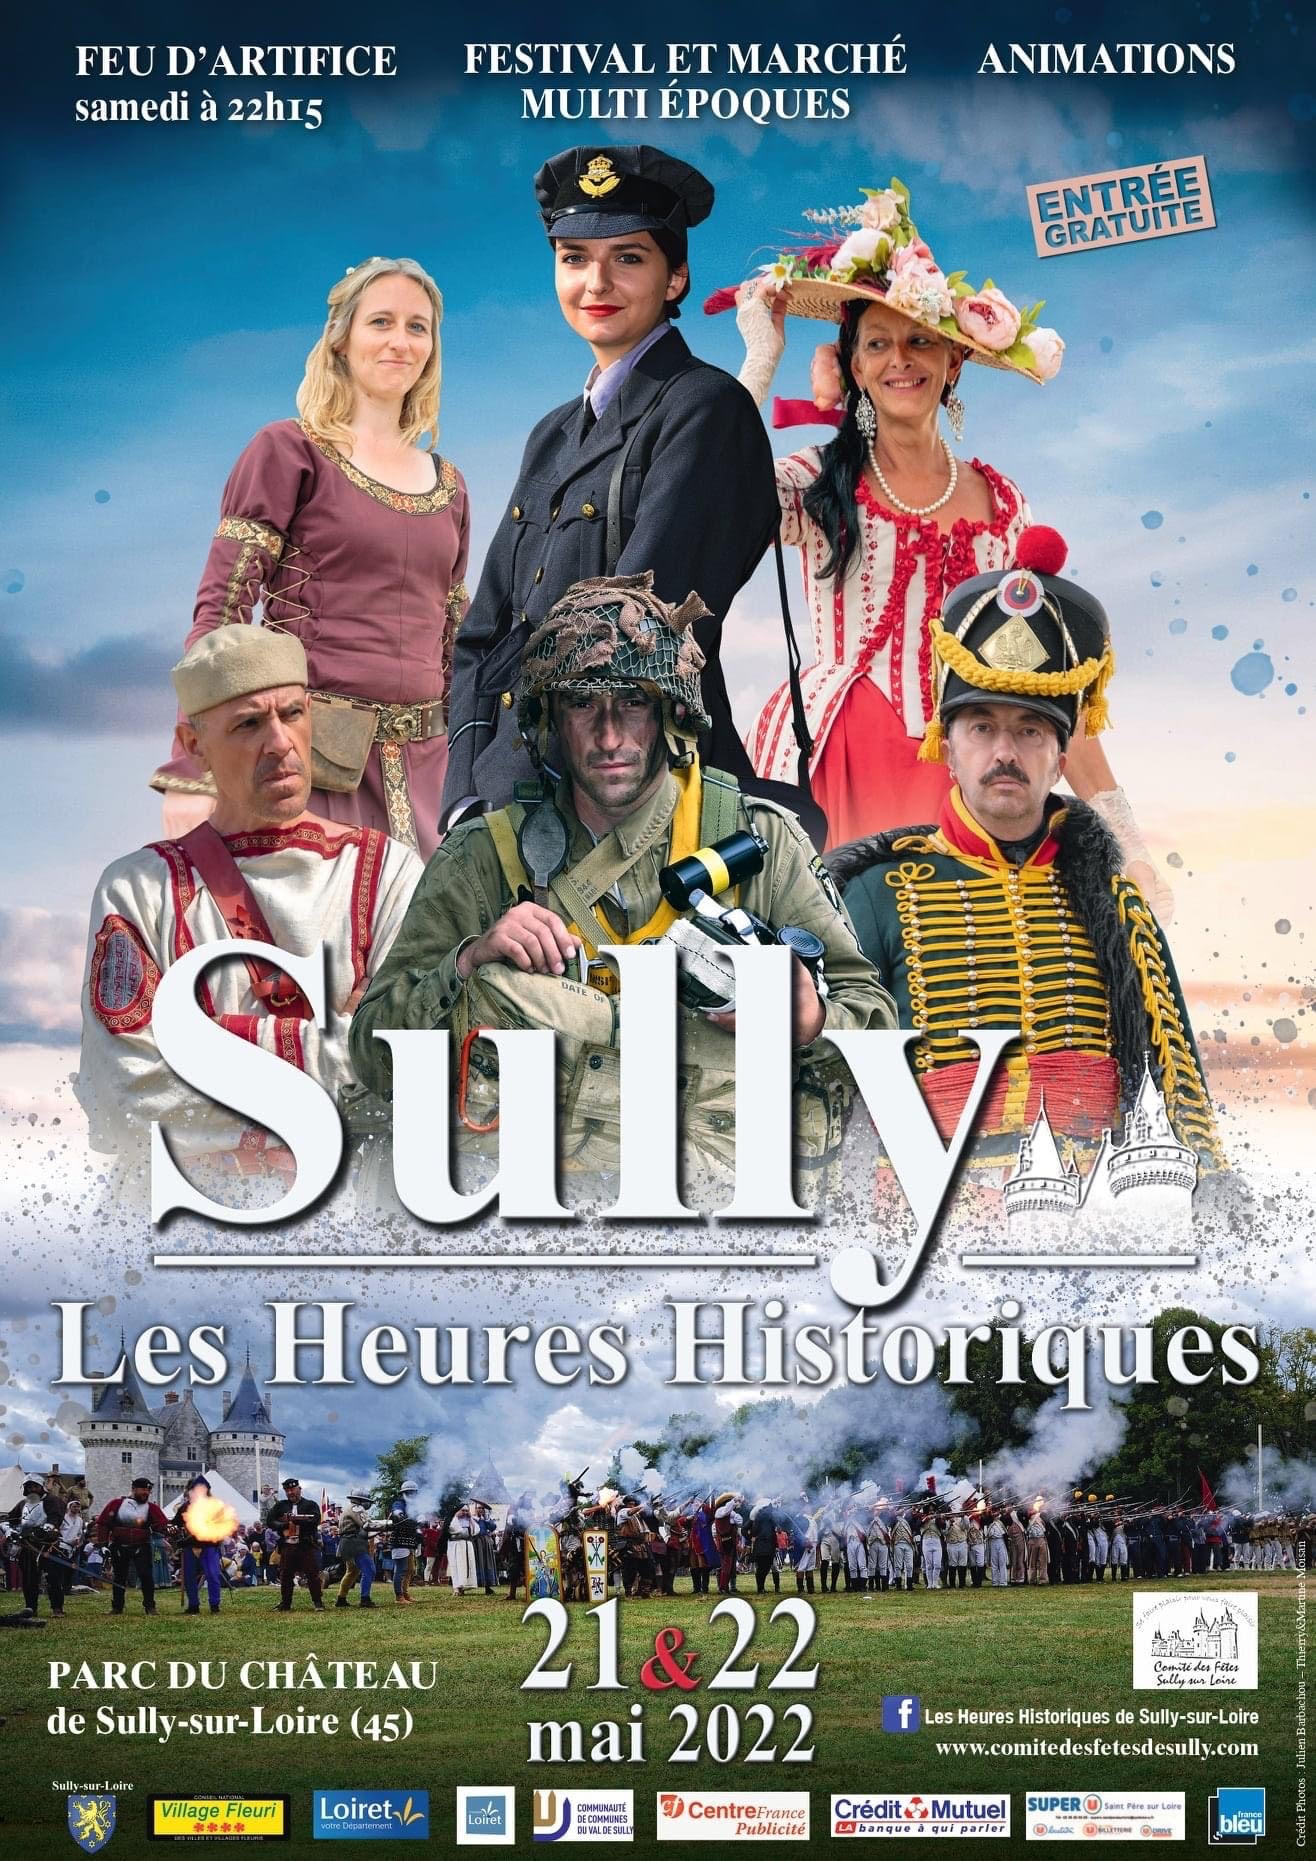 Les heures historiques de Sully-sur-Loire 2022